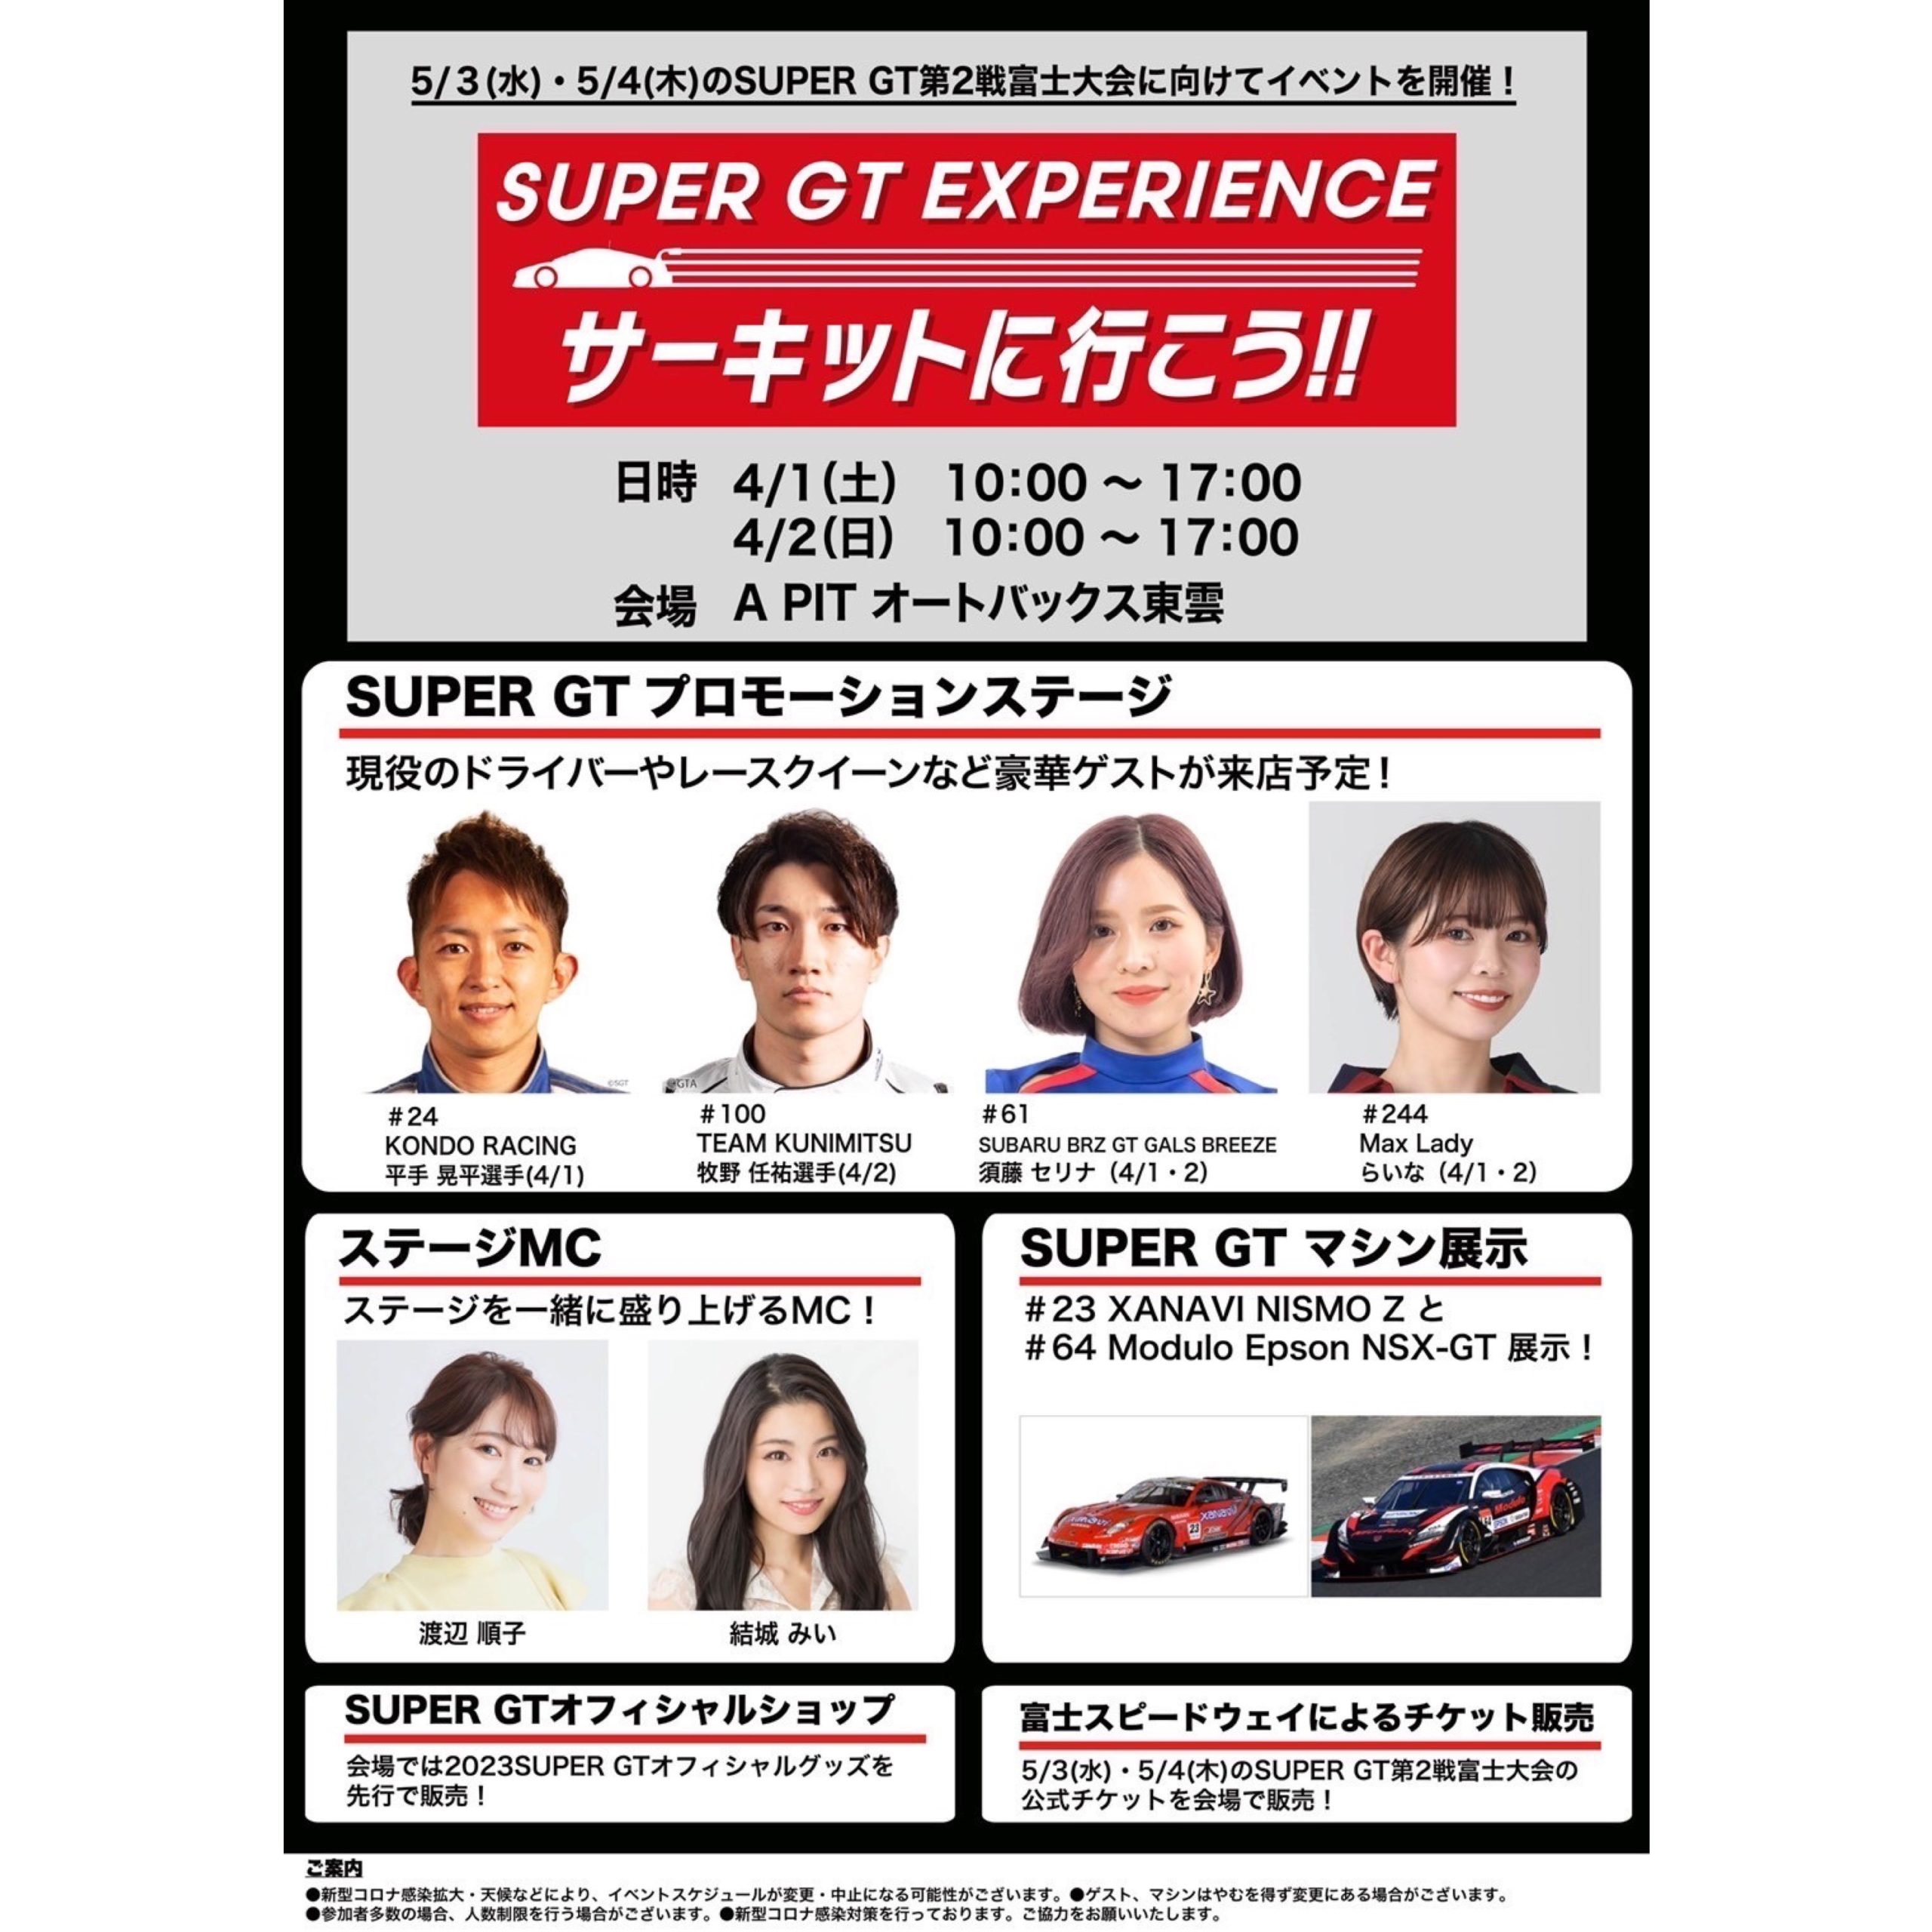 4/1(土)・4/2(日) SUPER GT EXPERIENCEイベント開催🏎